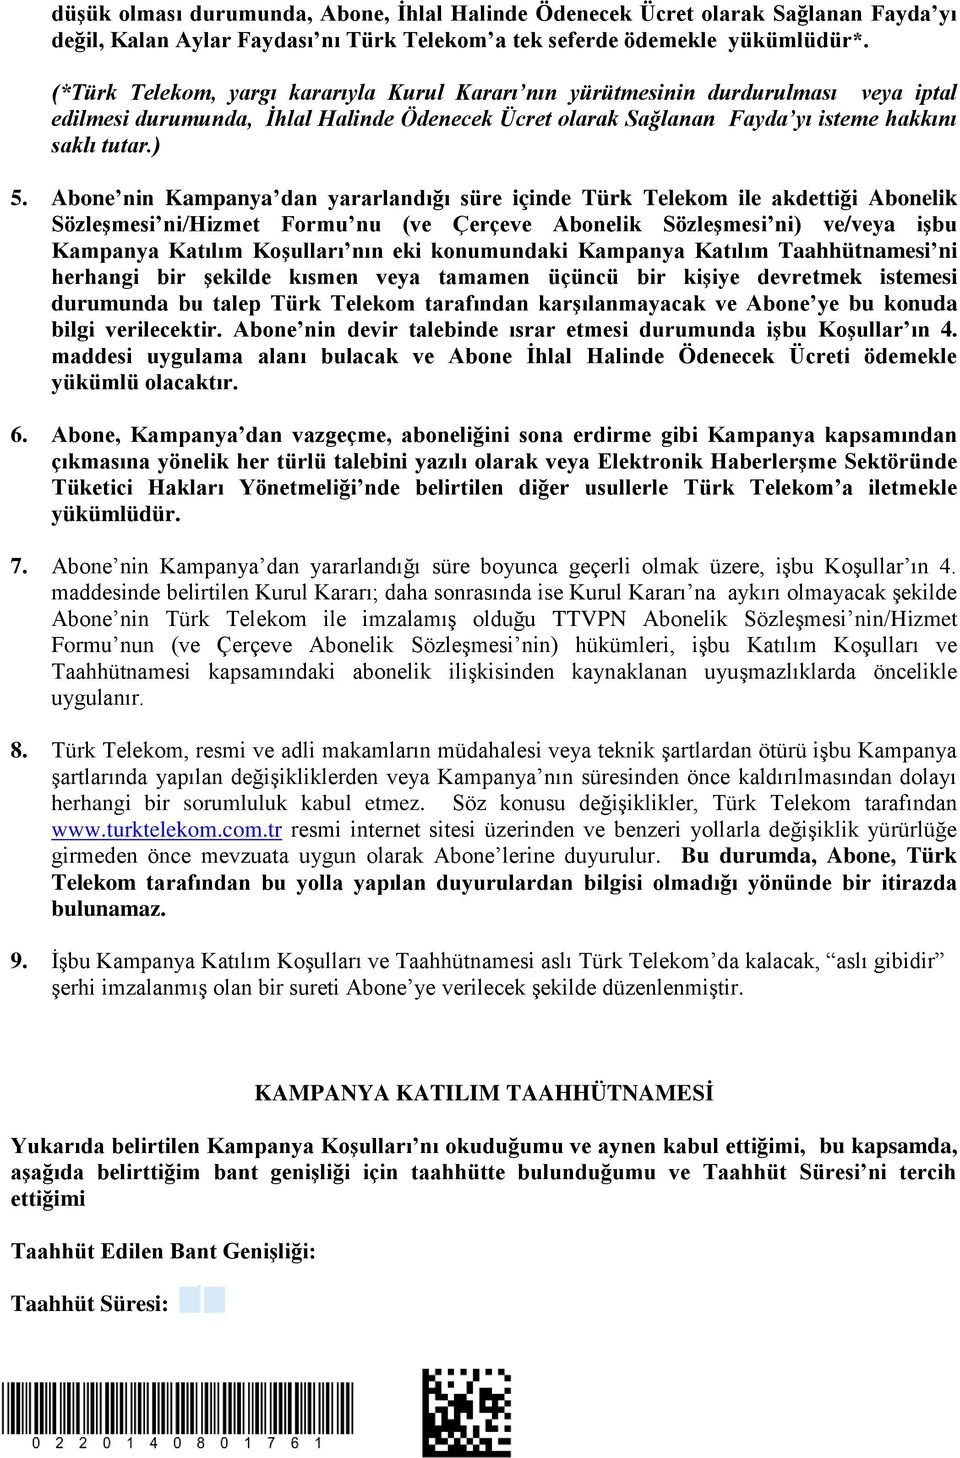 Abone nin Kampanya dan yararlandığı süre içinde Türk Telekom ile akdettiği Abonelik Sözleşmesi ni/hizmet Formu nu (ve Çerçeve Abonelik Sözleşmesi ni) ve/veya işbu Kampanya Katılım Koşulları nın eki